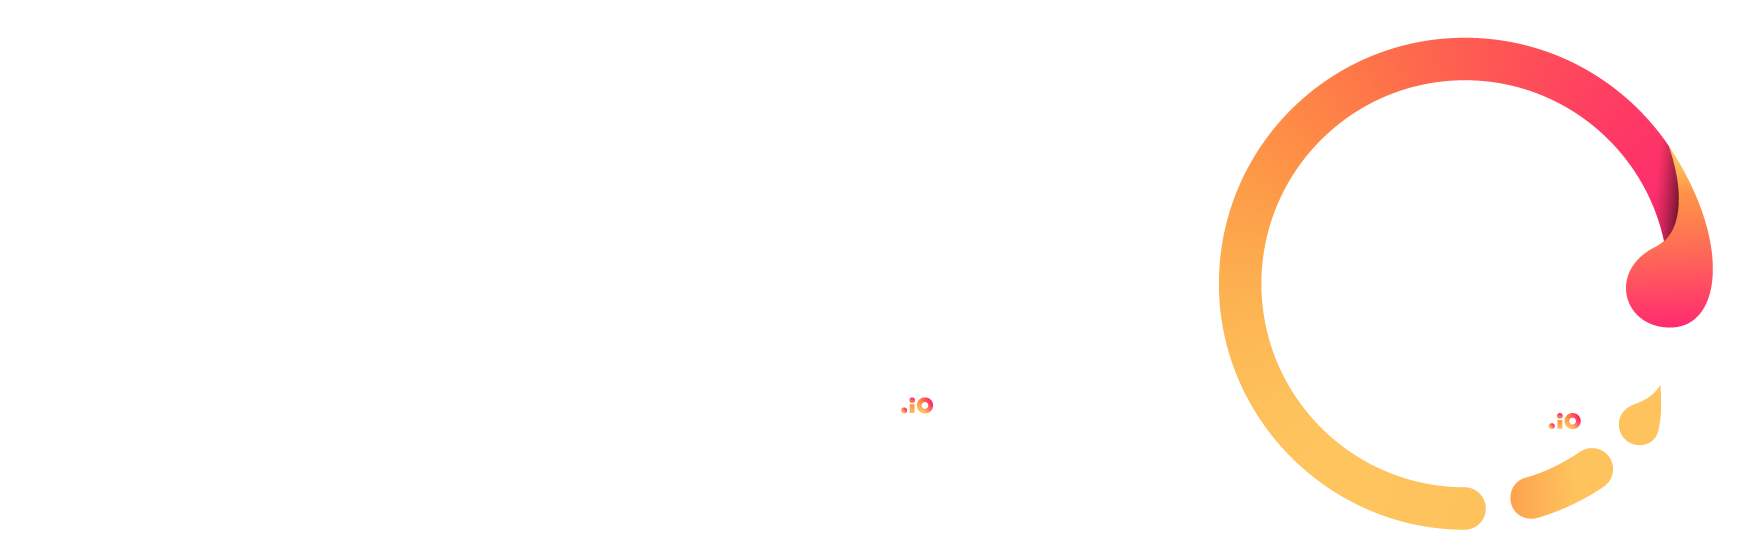 etape crea logo loadz